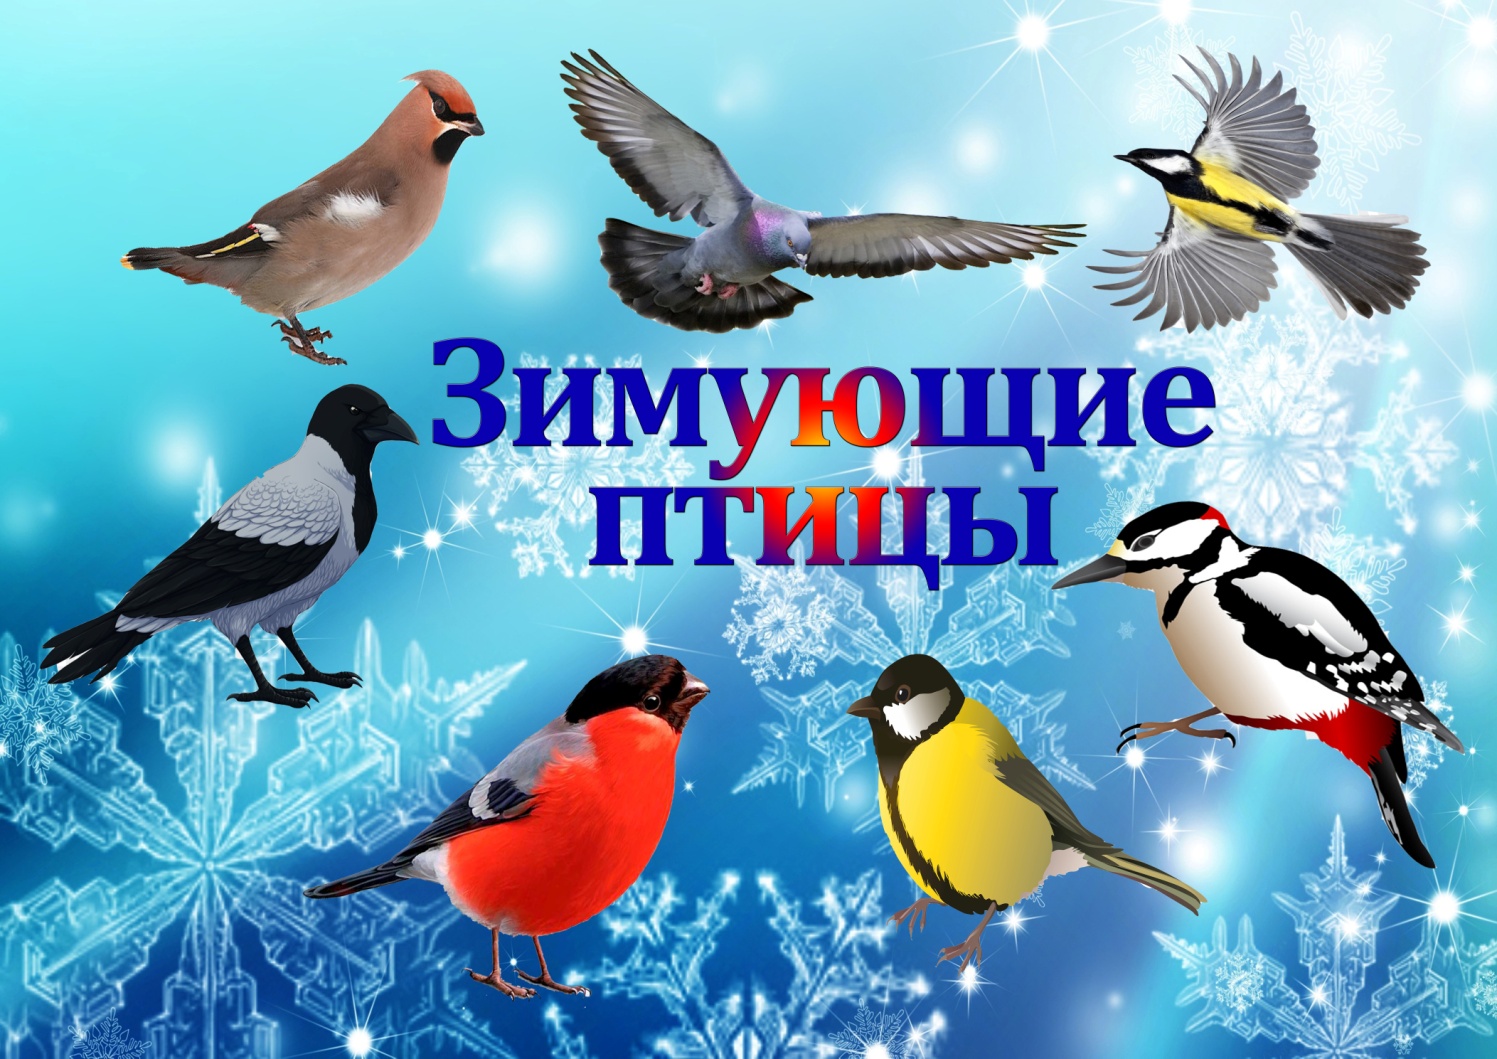 Зимующие птицы в городе | Средняя общеобразовательная школа № 29 имени  Игоря Рысьева